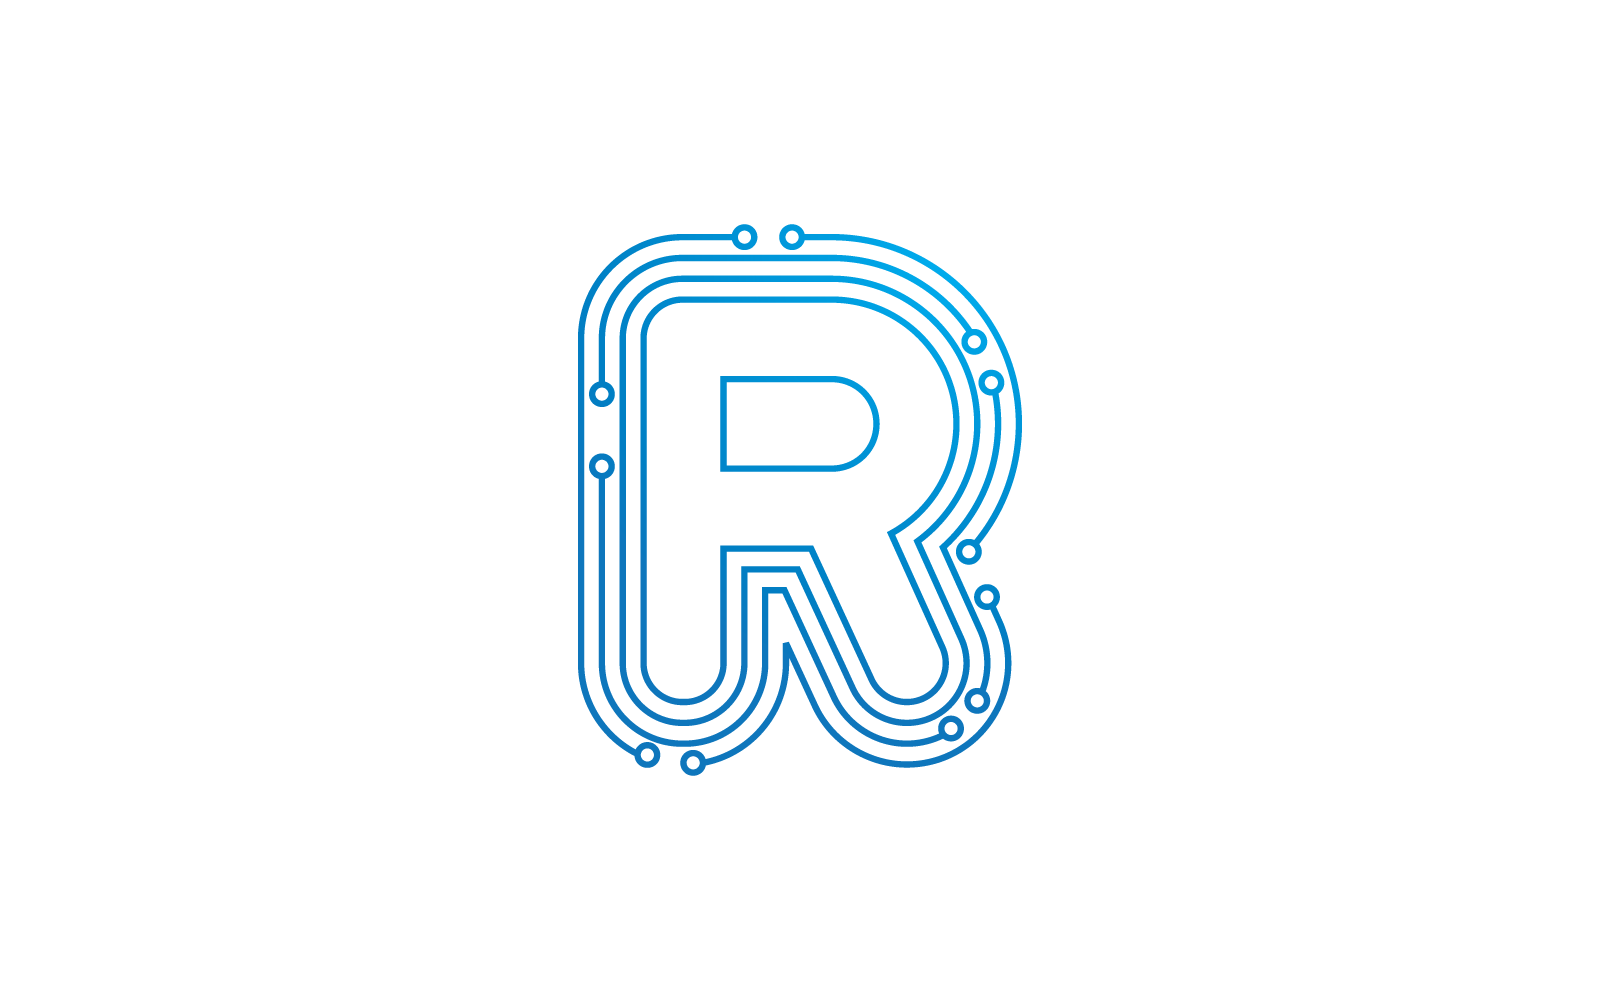 R початкової букви схеми технології ілюстрація логотип вектор шаблон